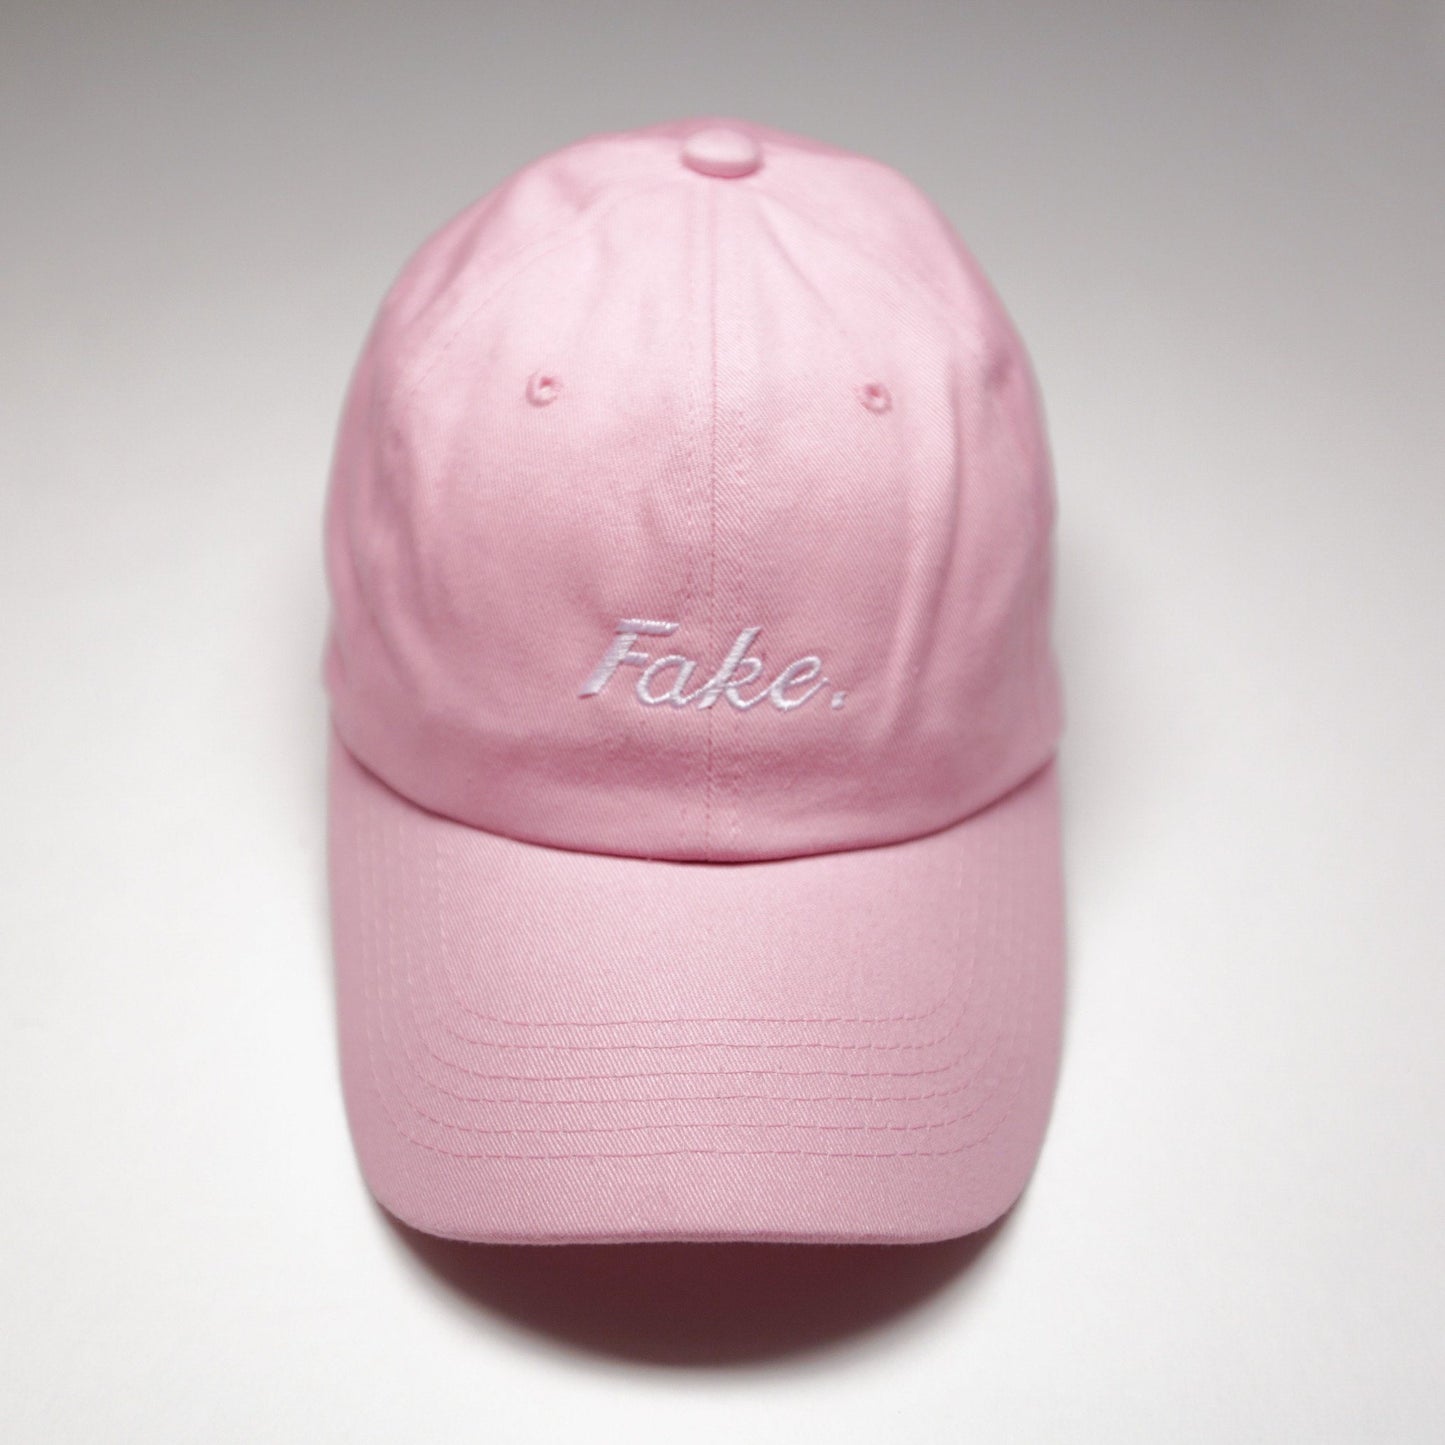 Pink "Fake" Cap - SeasonCaps  - Dad Cap 